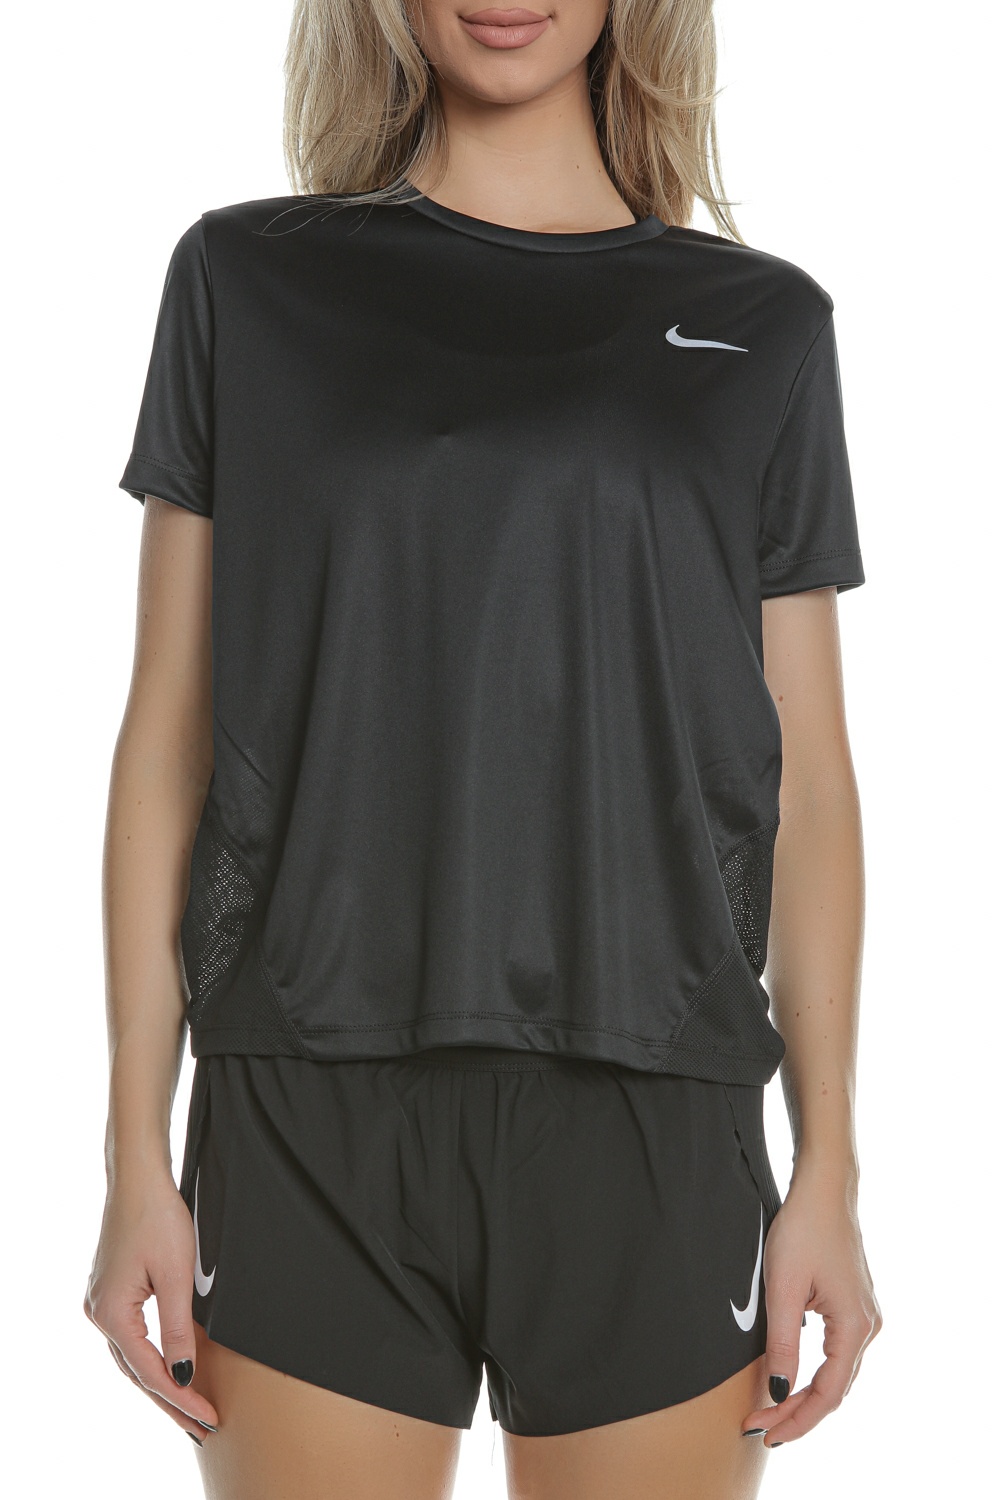 NIKE - Γυναικεία κοντομάνικη μπλούζα για τρέξιμο Nike Miler μαύρη Γυναικεία/Ρούχα/Αθλητικά/T-shirt-Τοπ